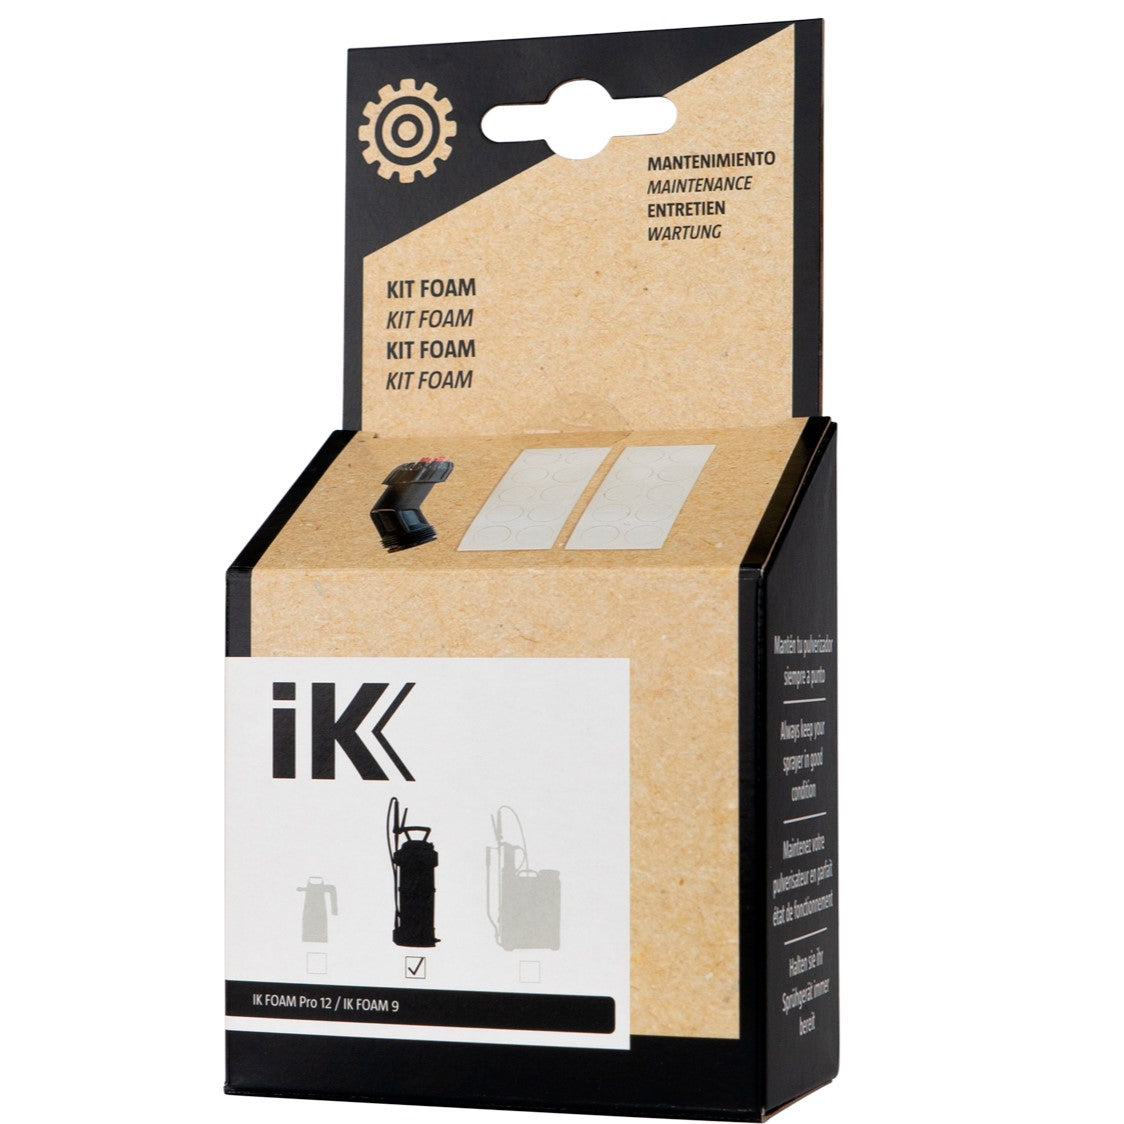 IK Sprayers Kit IK Foam Pro 12 e 9